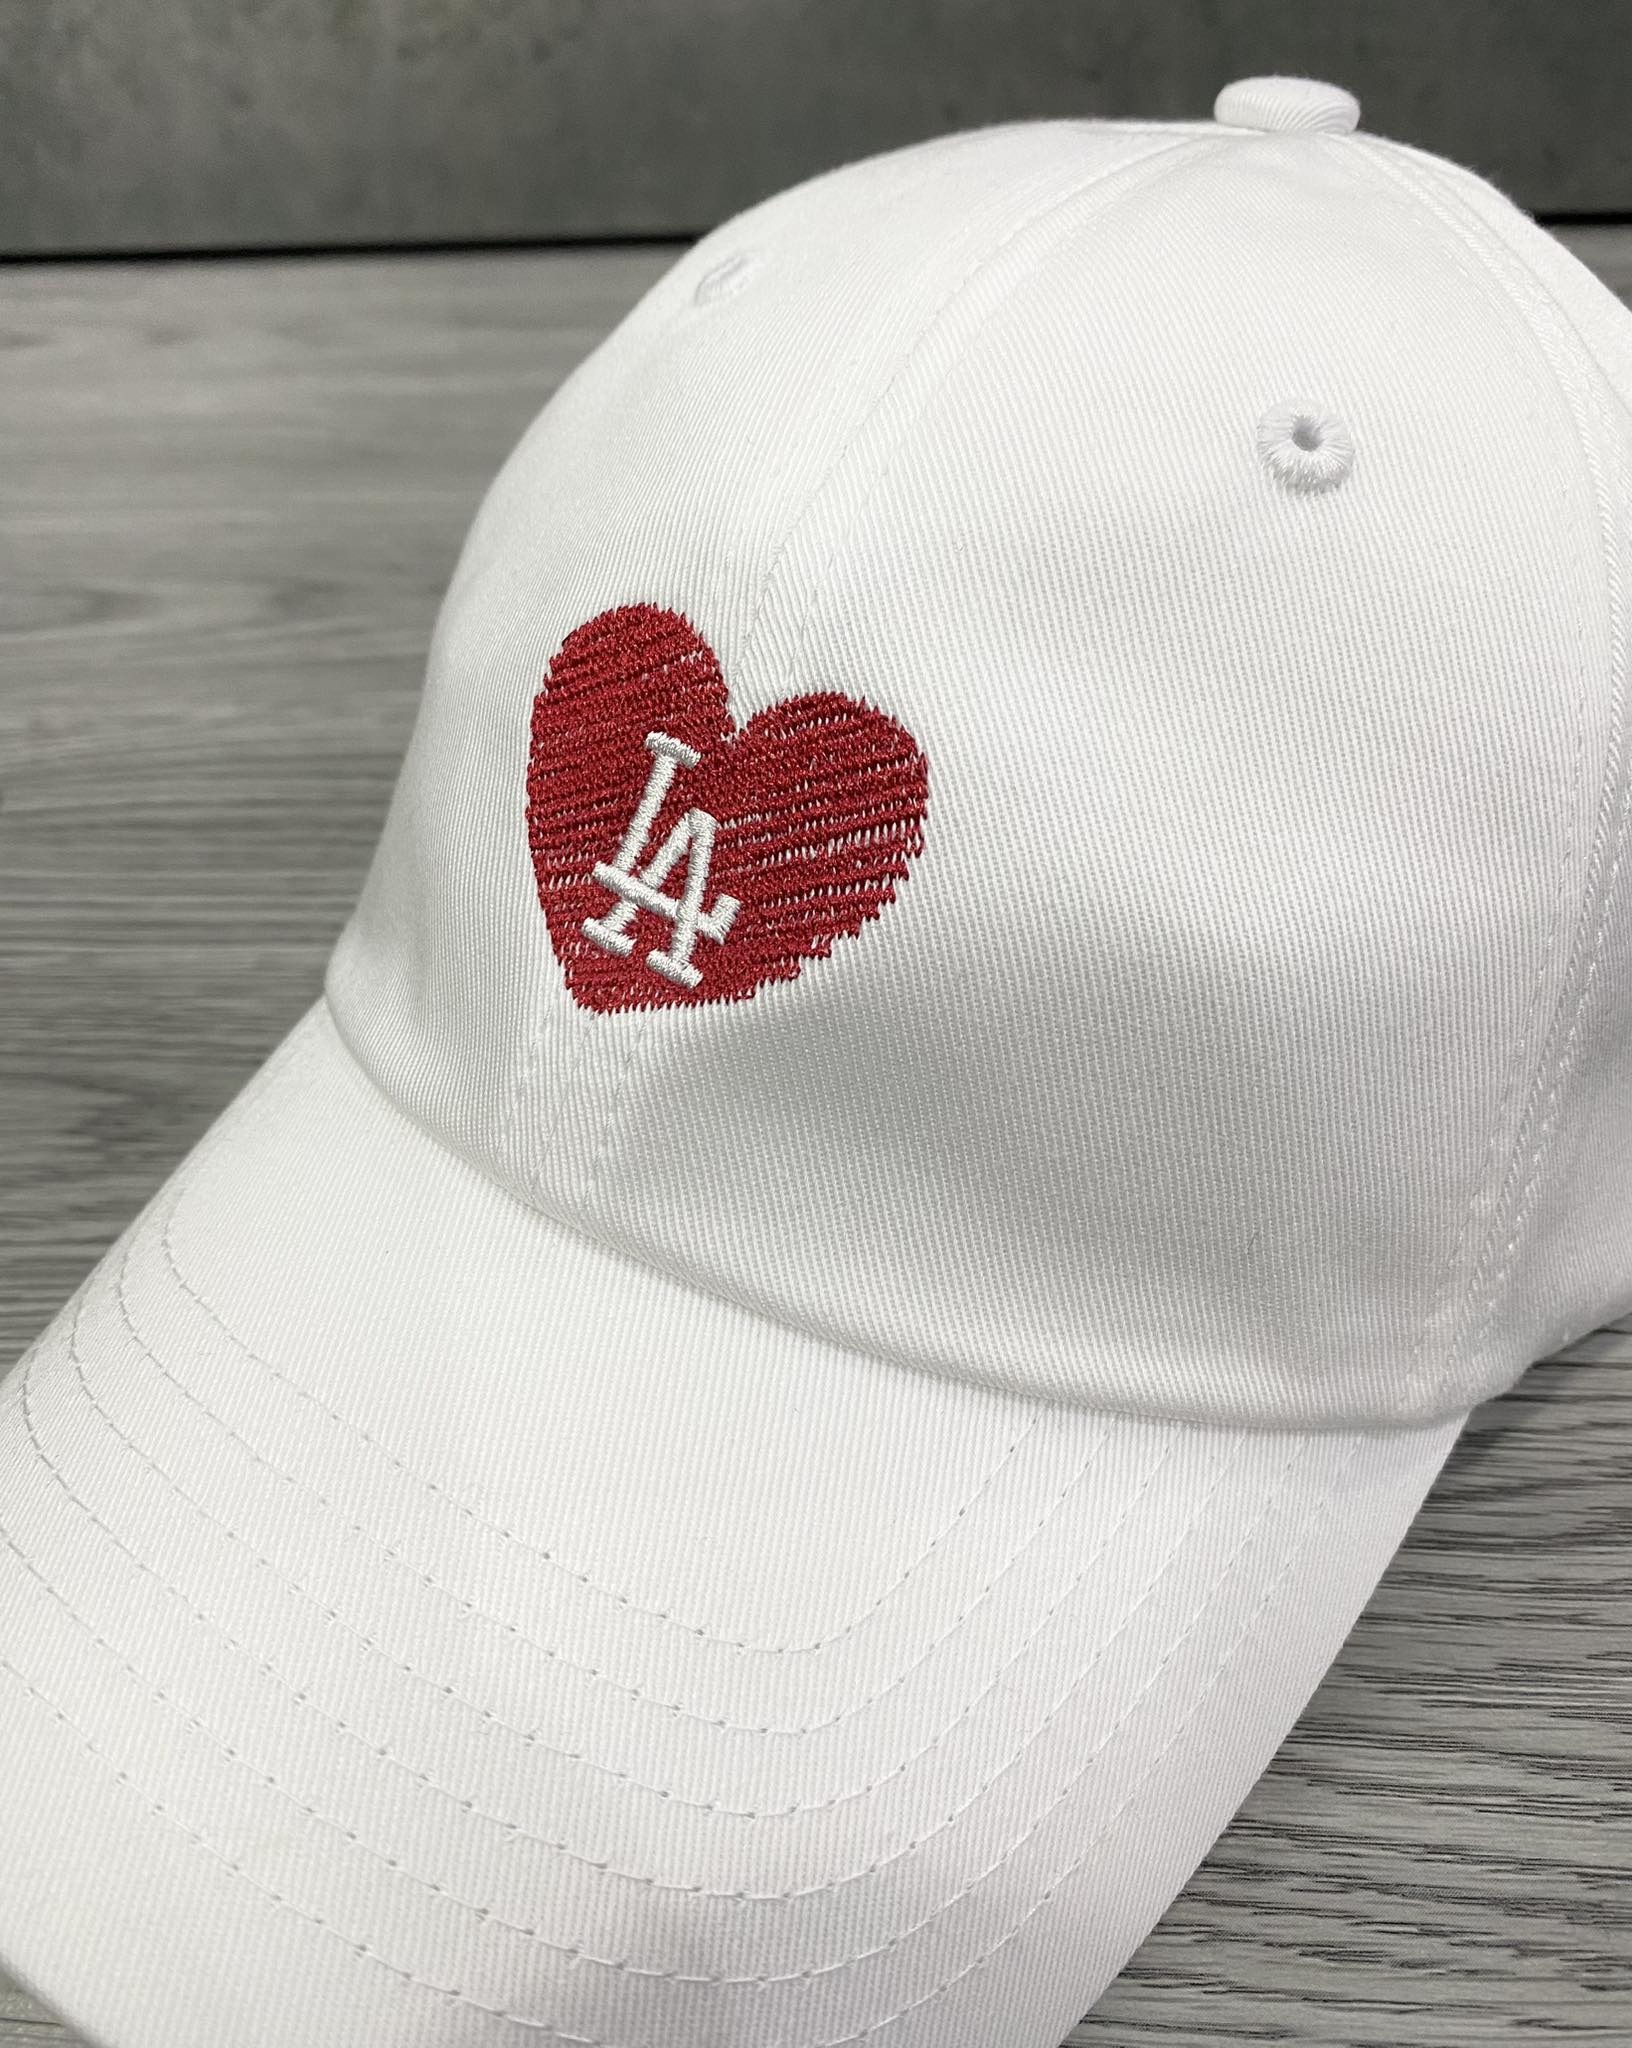 Phụ Kiện Chính Hãng - Mũ Lưỡi Trai MLB Heart Logo LA 'White' - 32CPUB111-07L